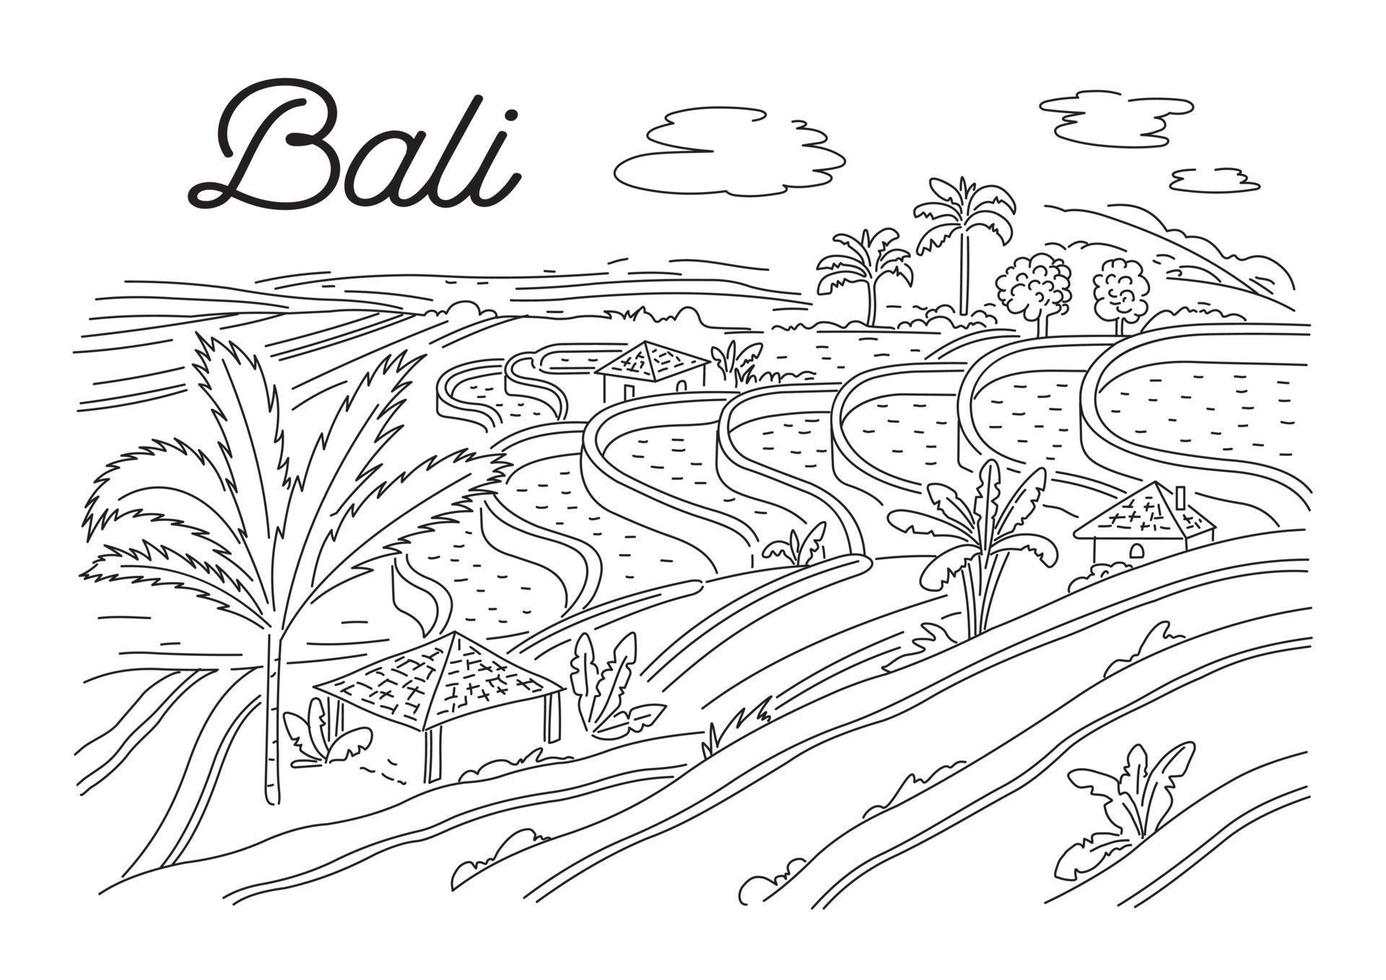 ris terrasser i bali. indonesiska natur. vektor linjär illustration, skiss